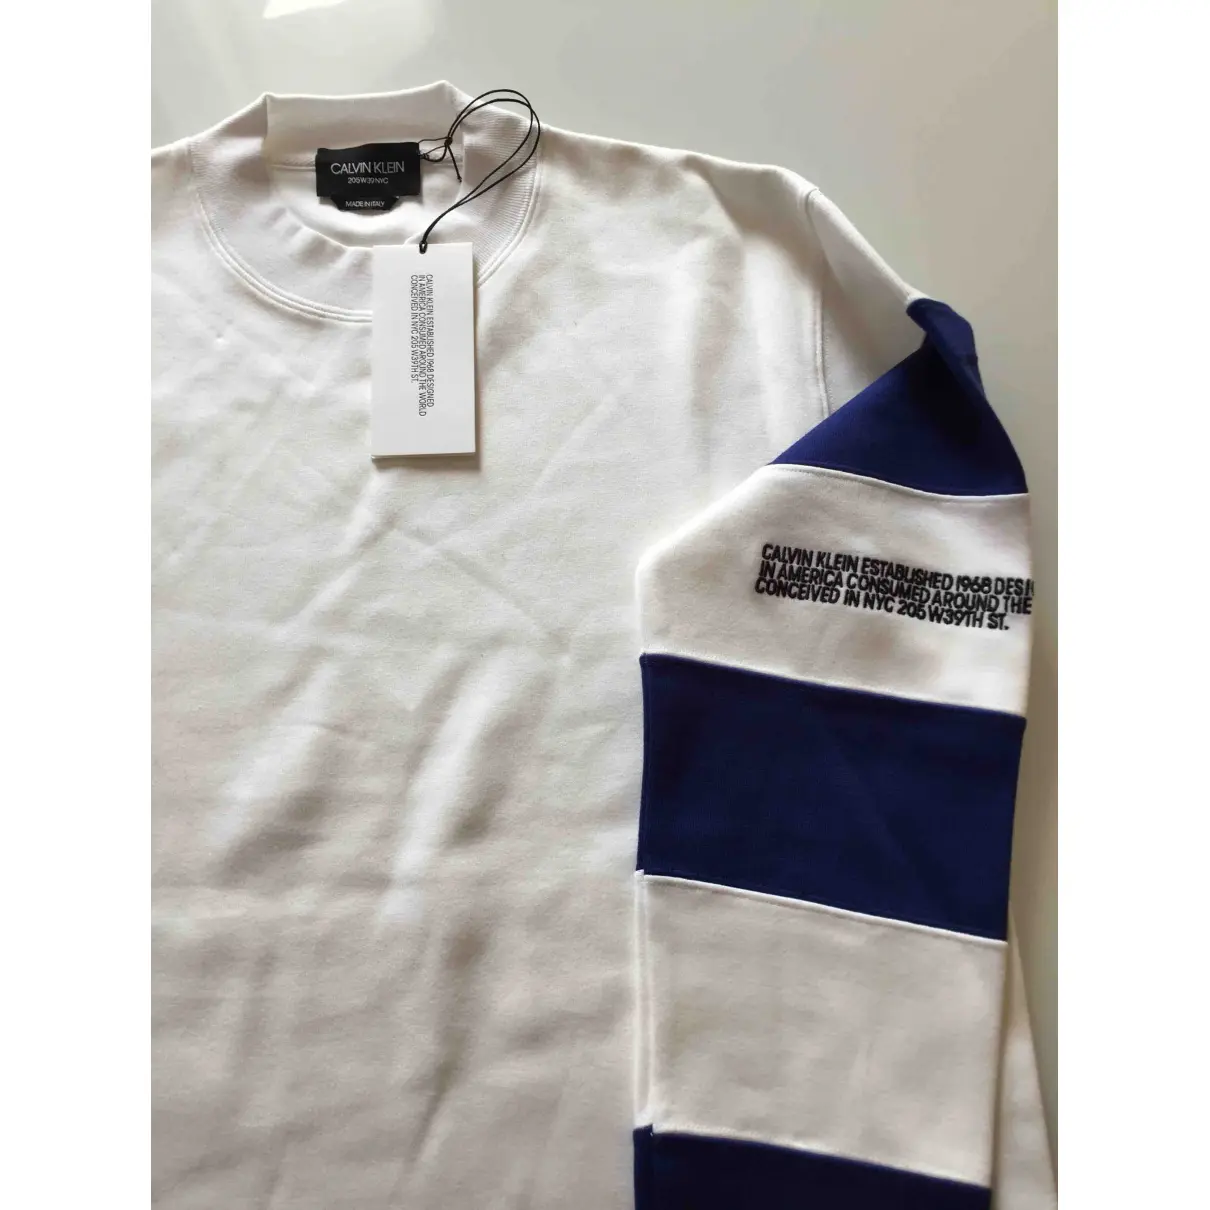 Buy Calvin Klein 205W39NYC White Cotton Knitwear & Sweatshirt online